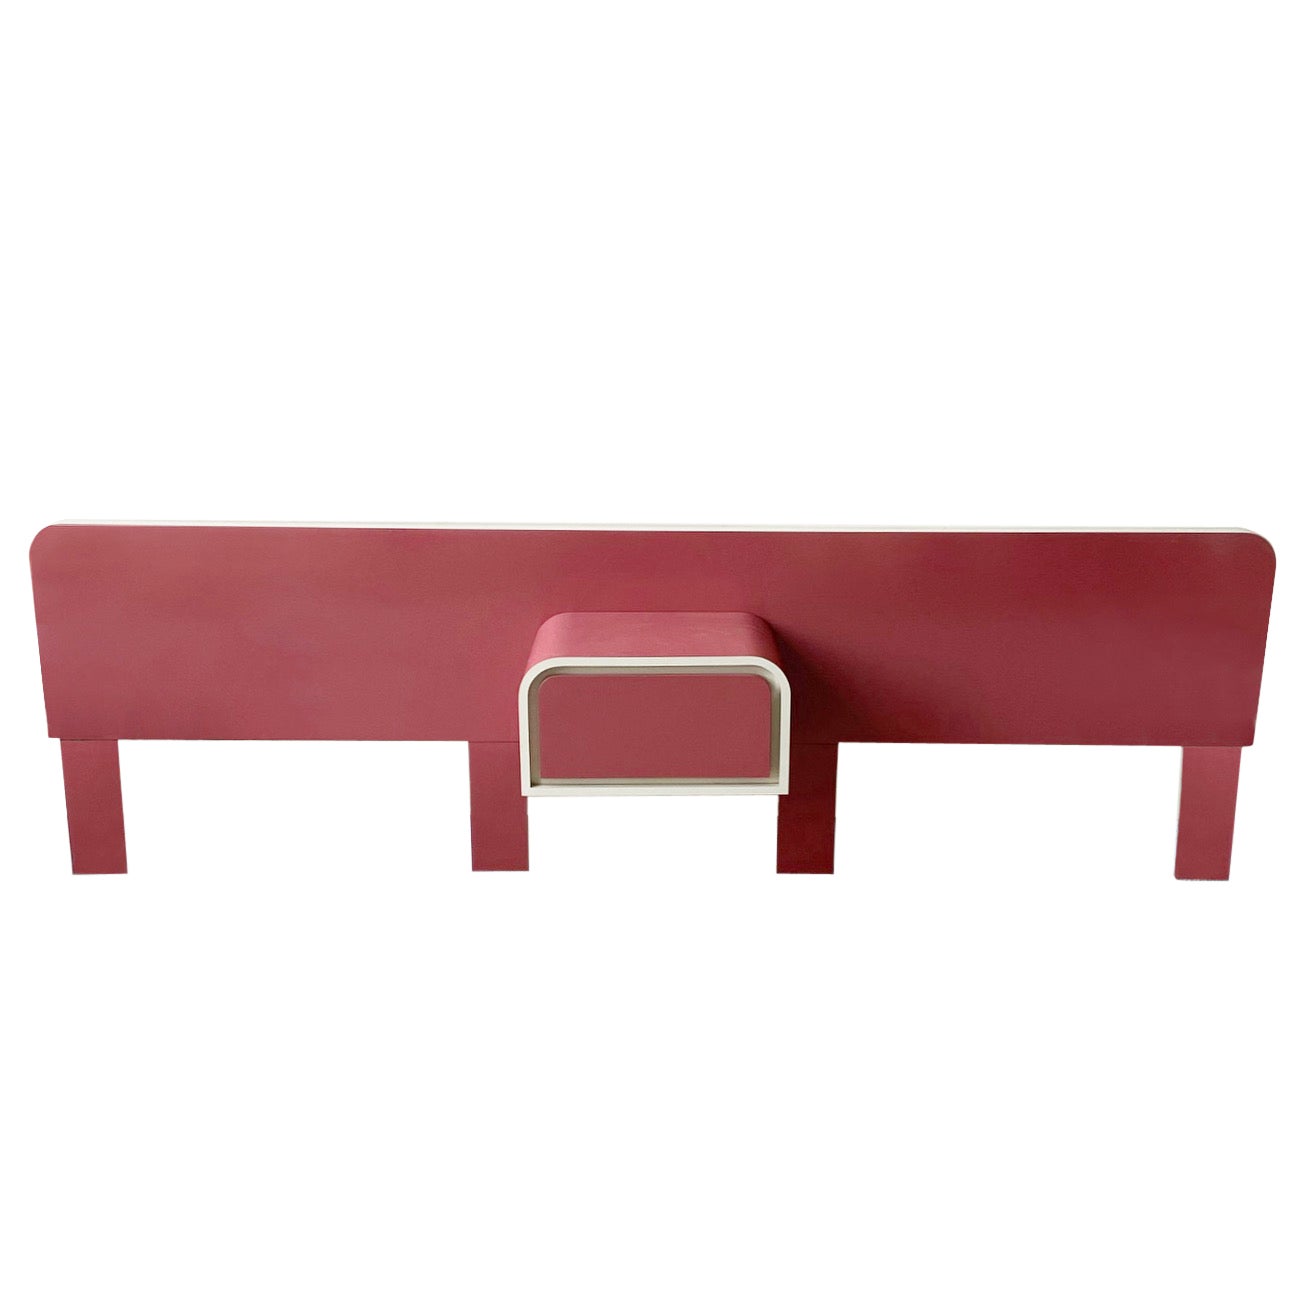 Tête de lit postmoderne en stratifié laqué rose et crème avec table de nuit flottante